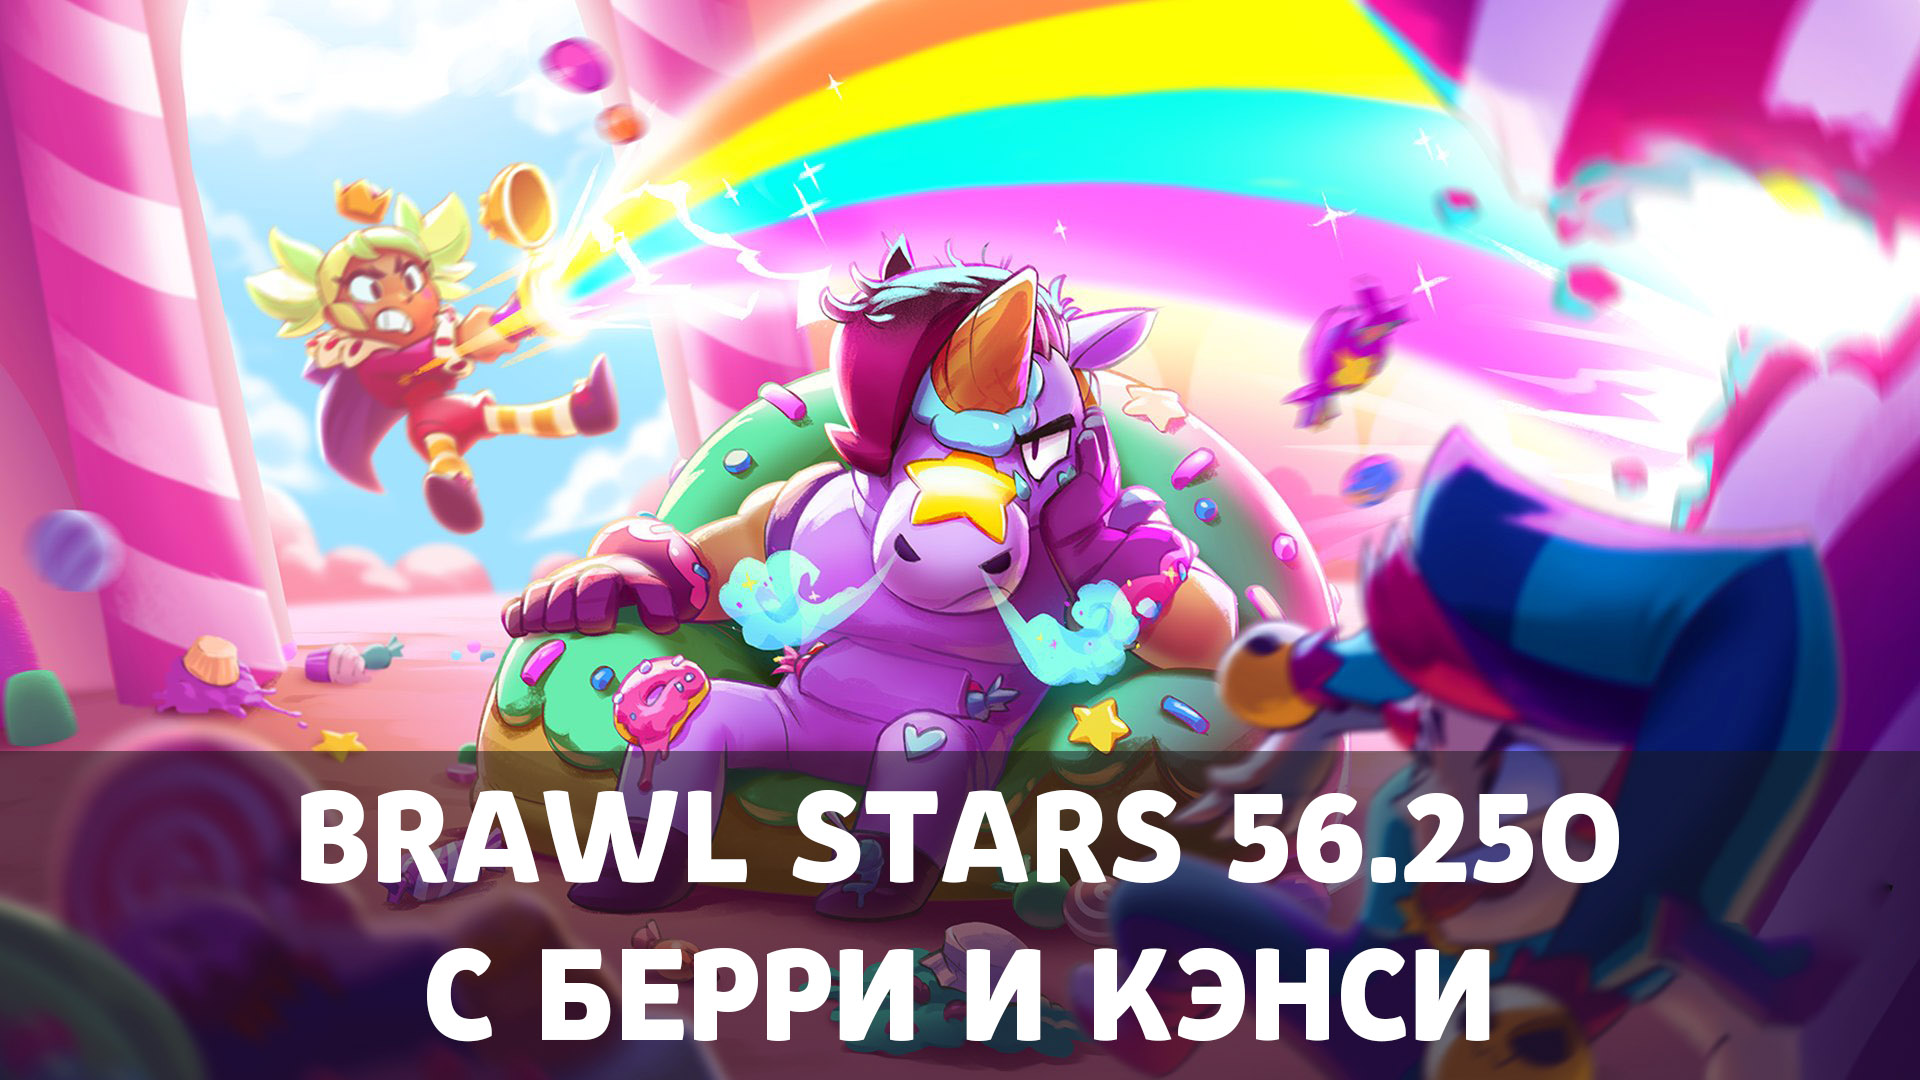 Как скачать Brawl Stars последнюю версию 56.250 на Android image